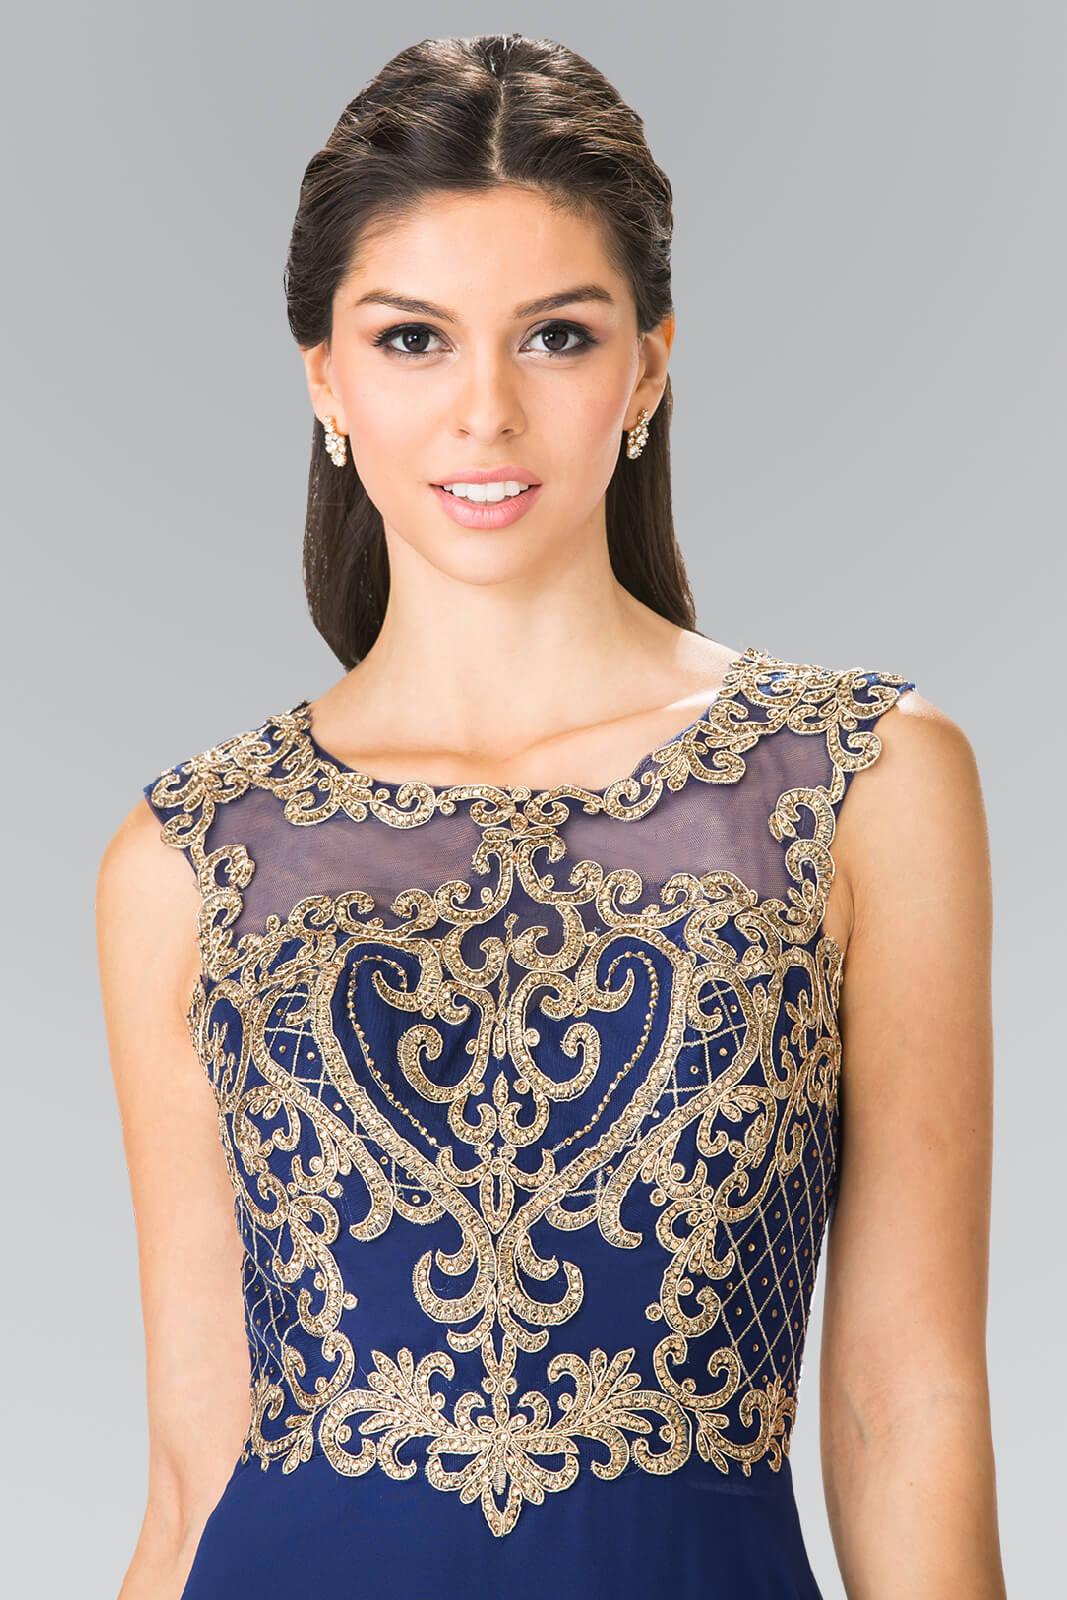 Formal Long Prom Dress Evening Gown - The Dress Outlet Elizabeth K